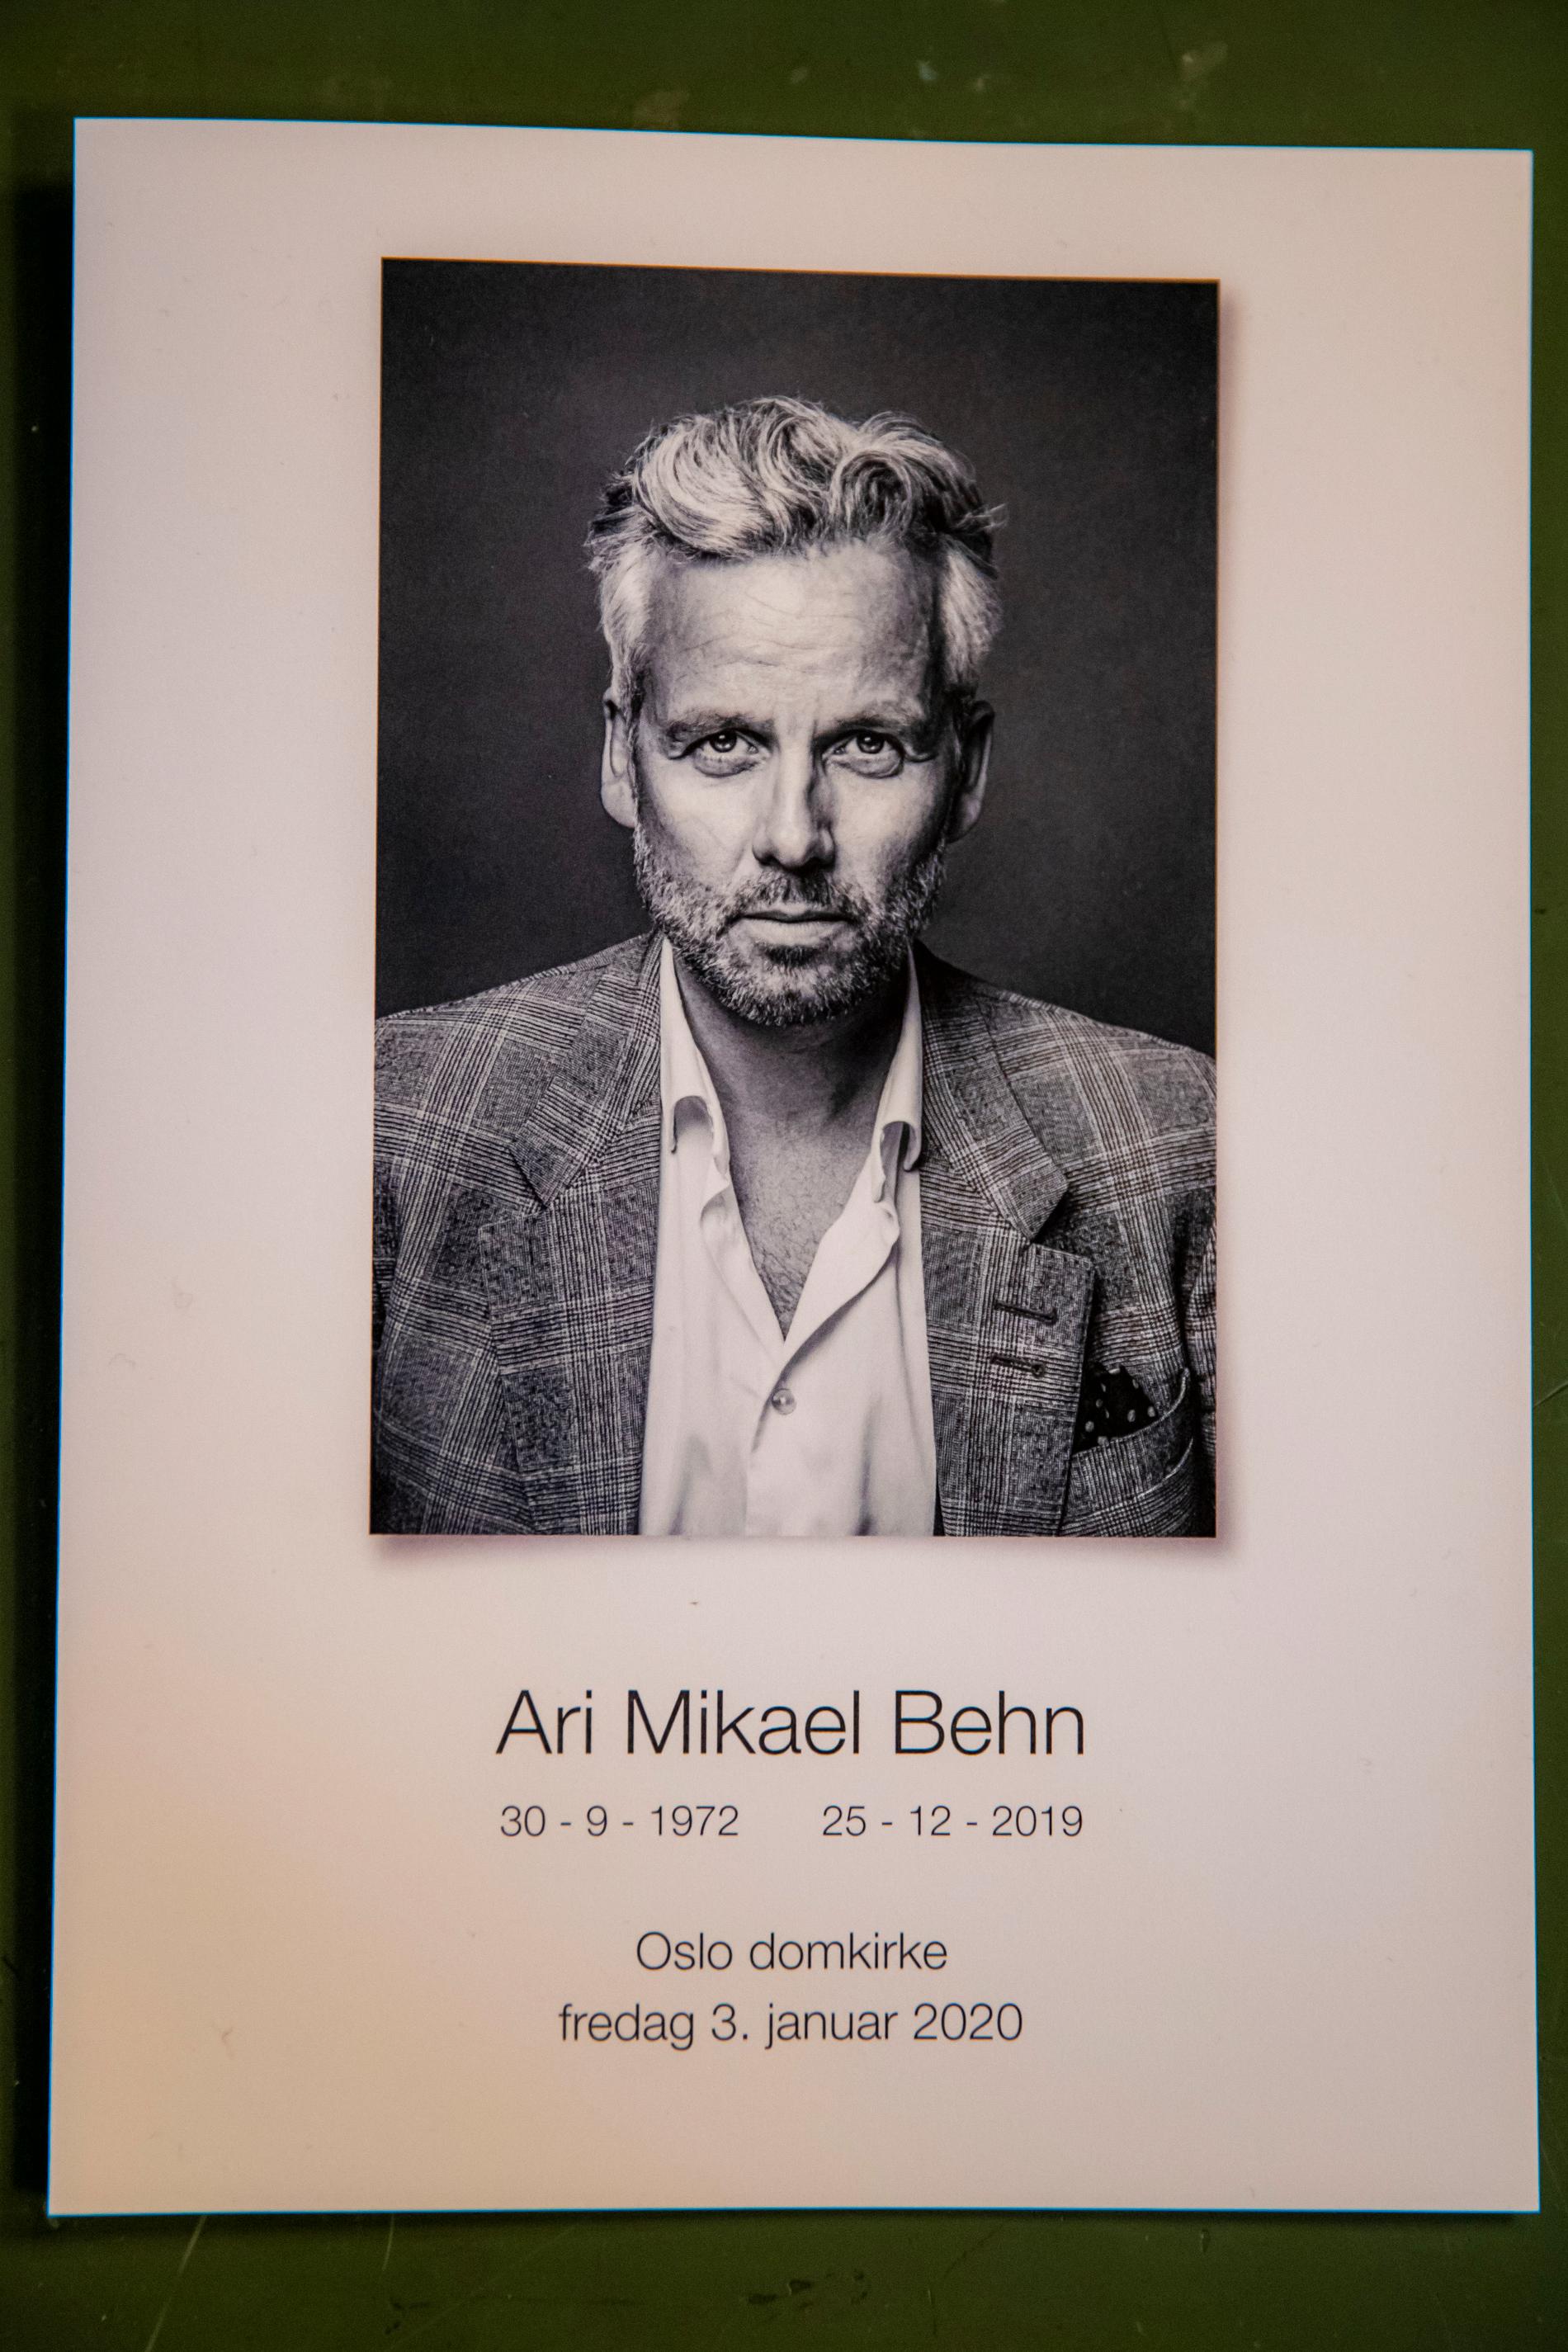 Fotografen och Ari Behns nära vän Per Heimli har tagit bilden till programbladet på första sidan inför Ari Behns begravning i Oslo domkirke.